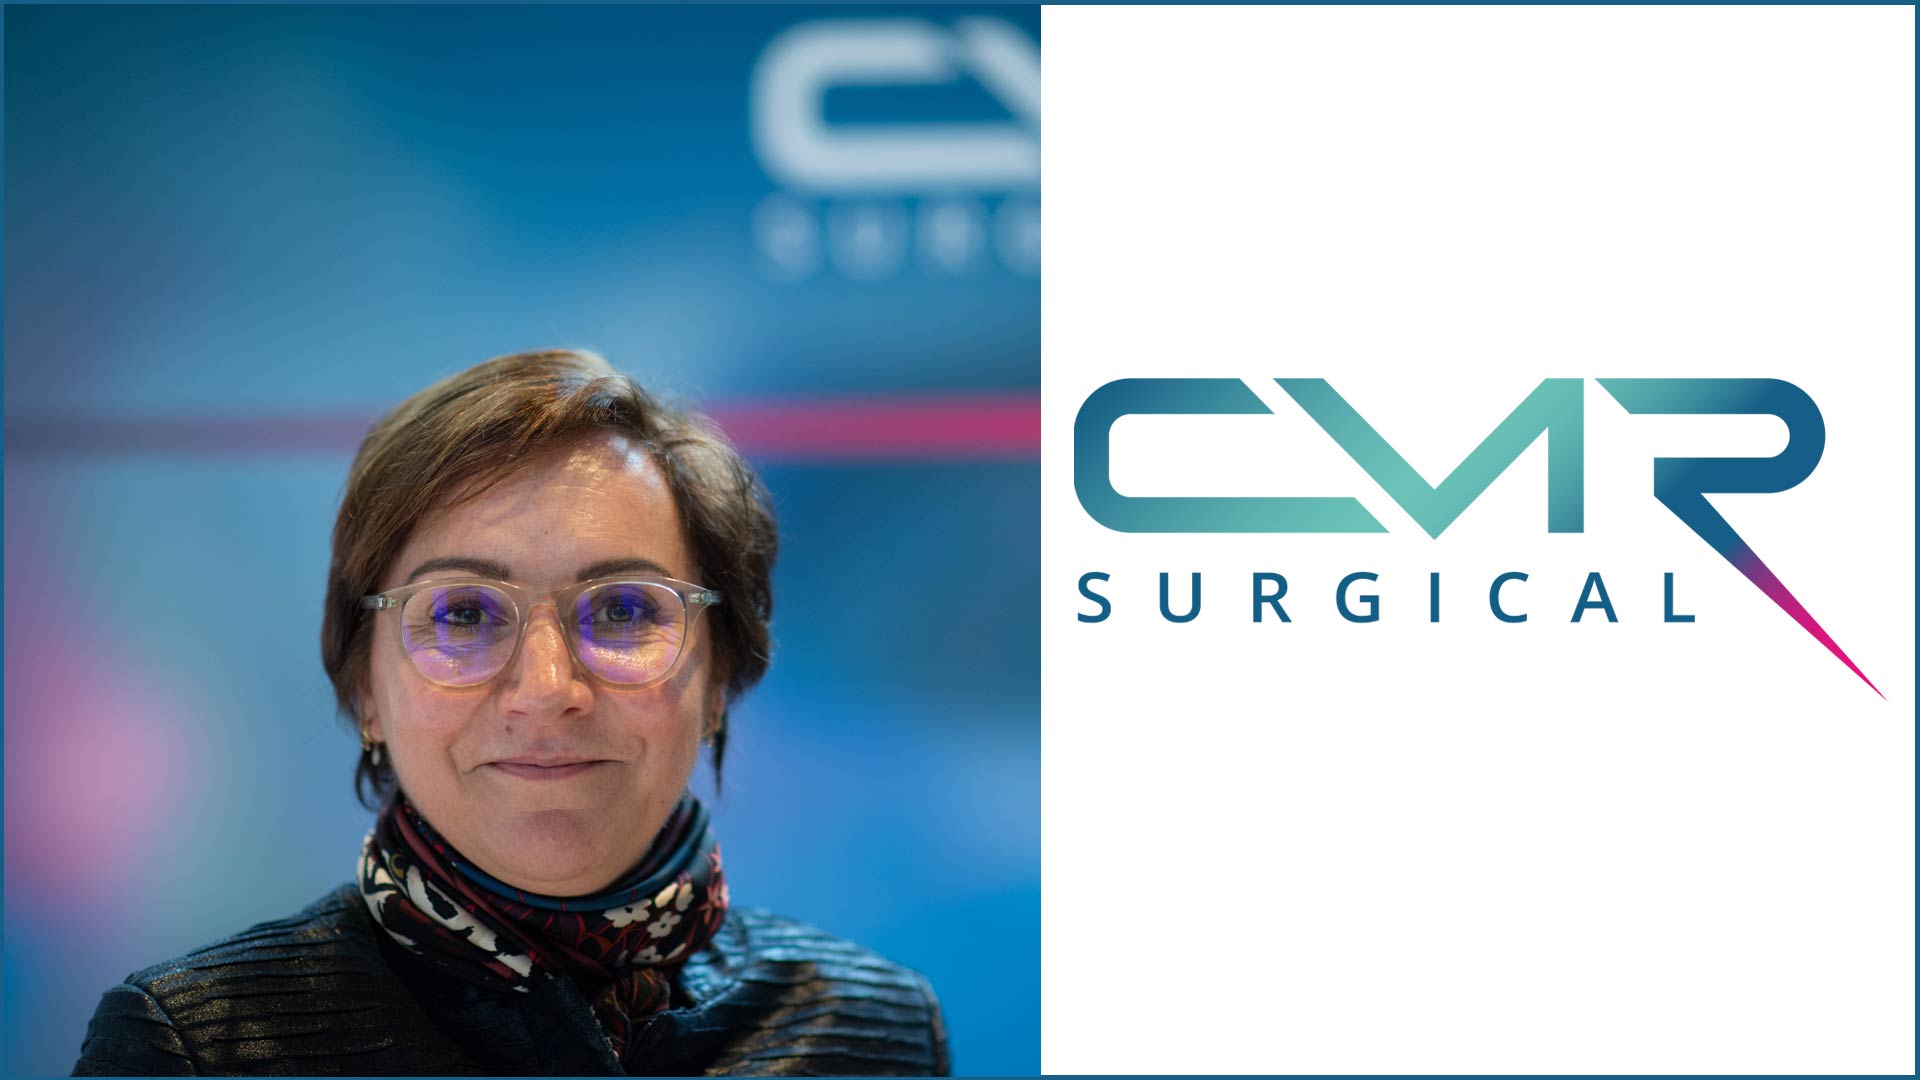 CMR Surgical revolutioniert die Chirurgie